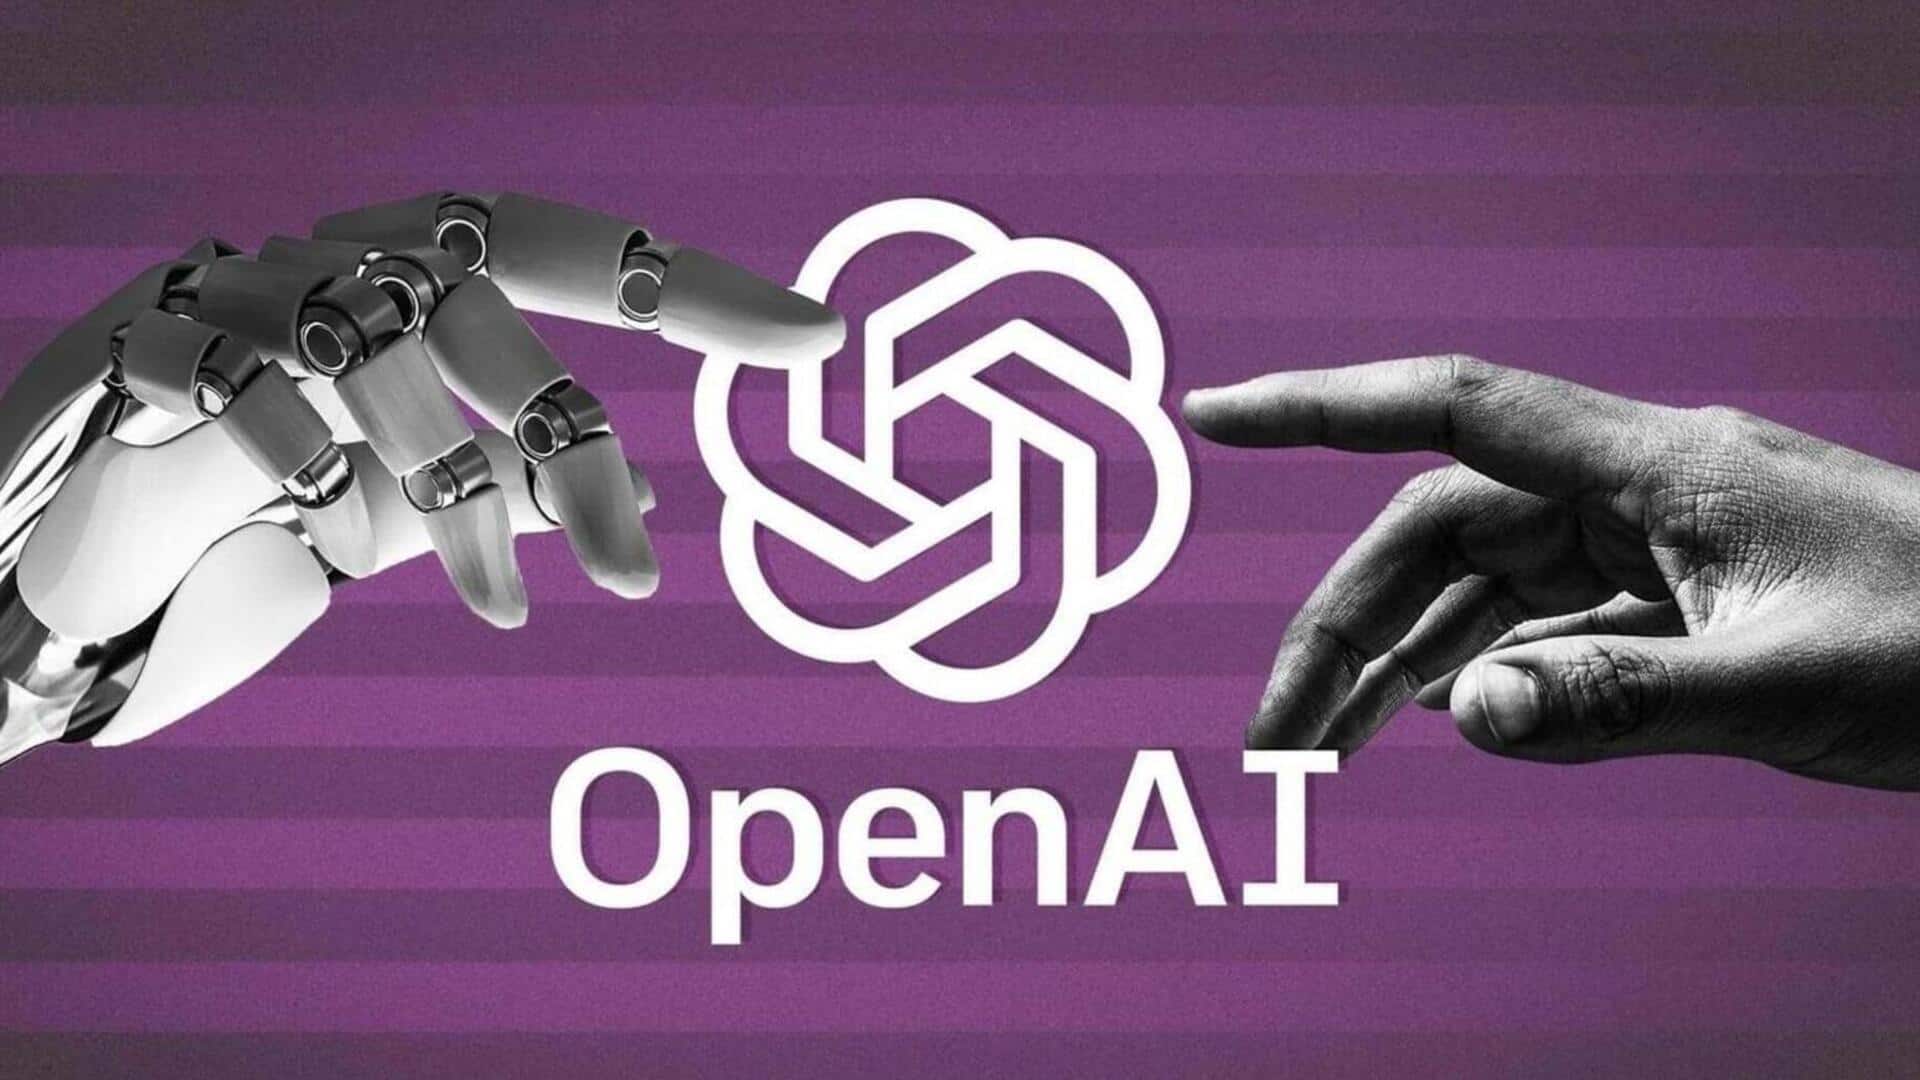 अमेरिकी रक्षा विभाग के लिए साइबर सुरक्षा टूल बना रही OpenAI, इन क्षेत्रों में देगी योगदान